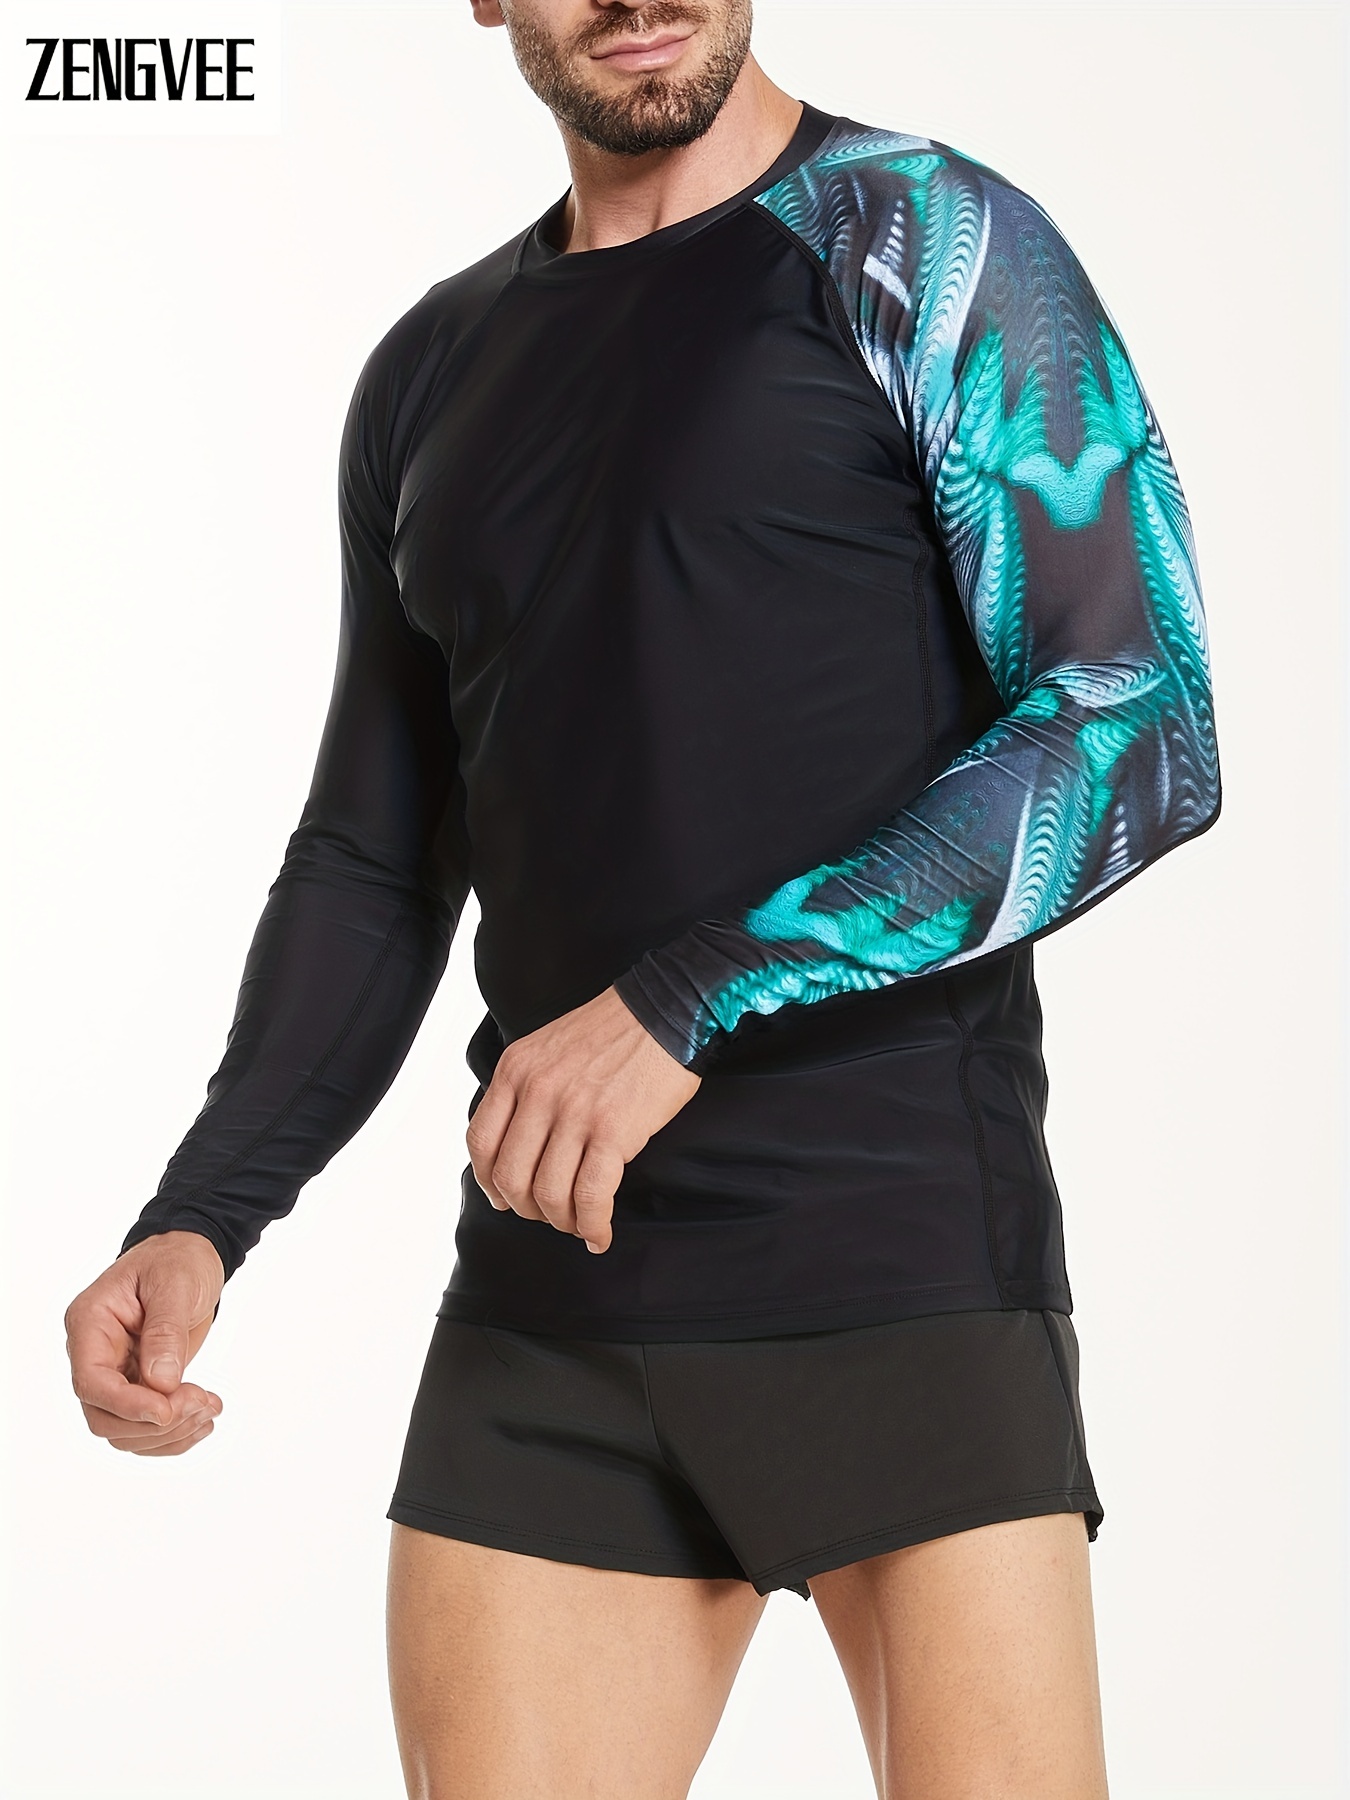 TSLA - Camiseta de manga larga con protección solar/ultravioleta FPU 50+  para hombres, de secado rápido, ideal para natación, surf y deportes